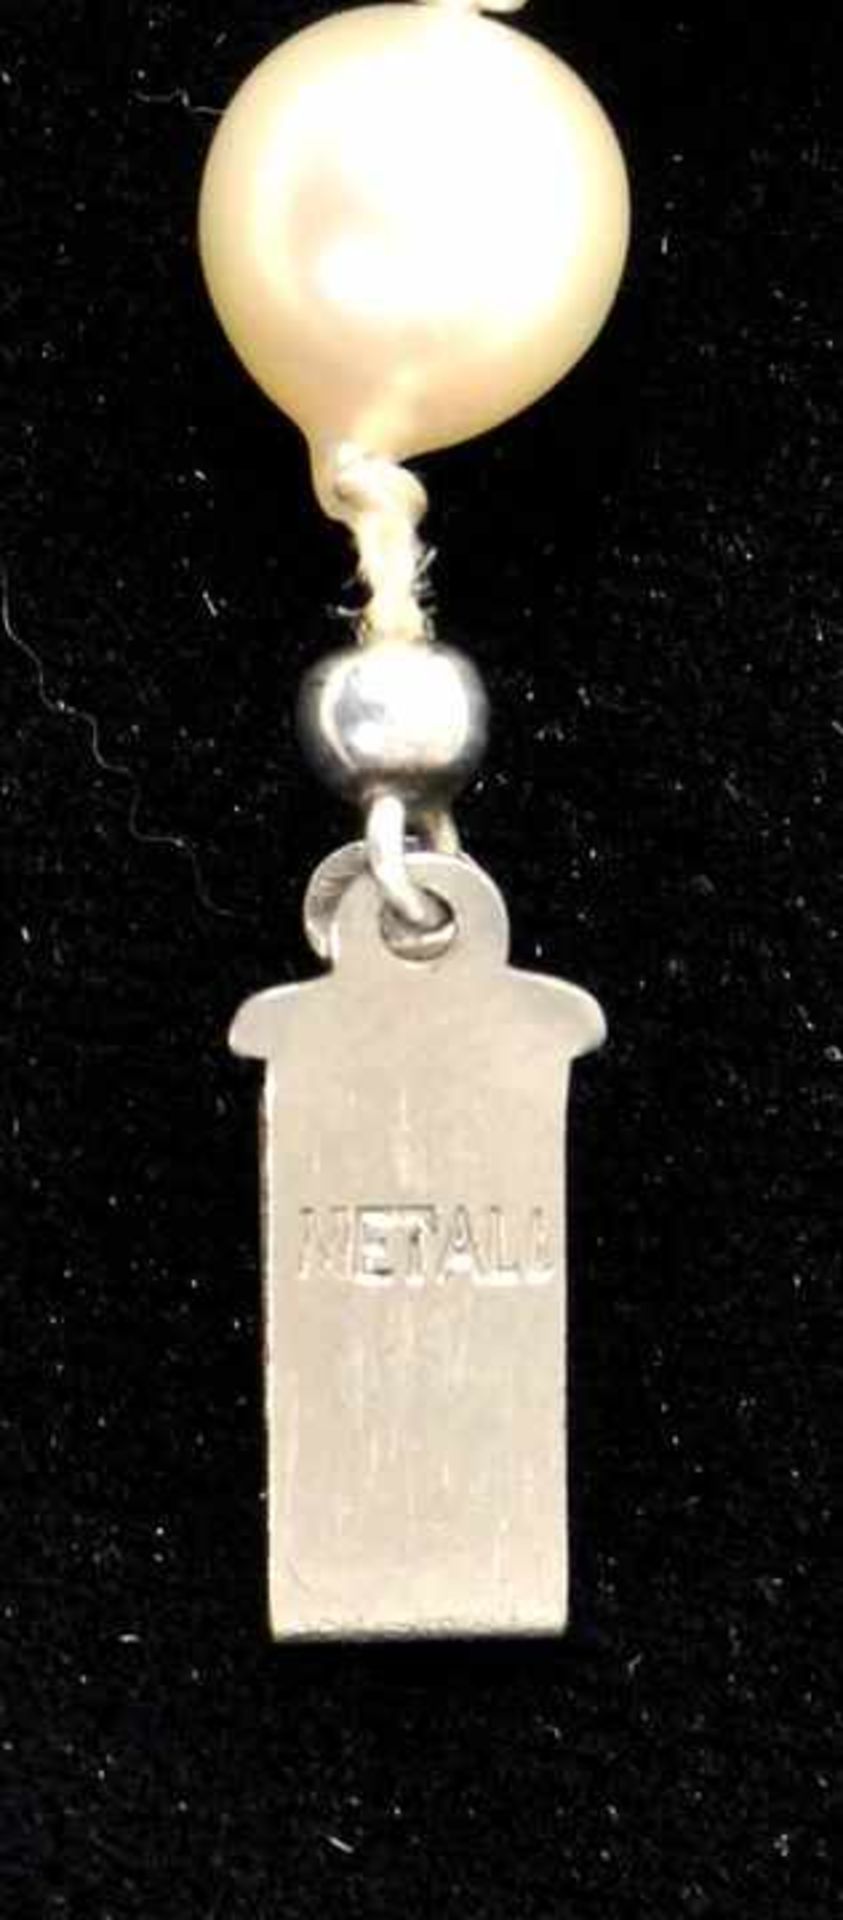 PerlenketteEinreihiges Colier von cremeweißen Barock-Zuchtperlen, D. 7,5 mm, geknotet, Schließe - Bild 3 aus 3